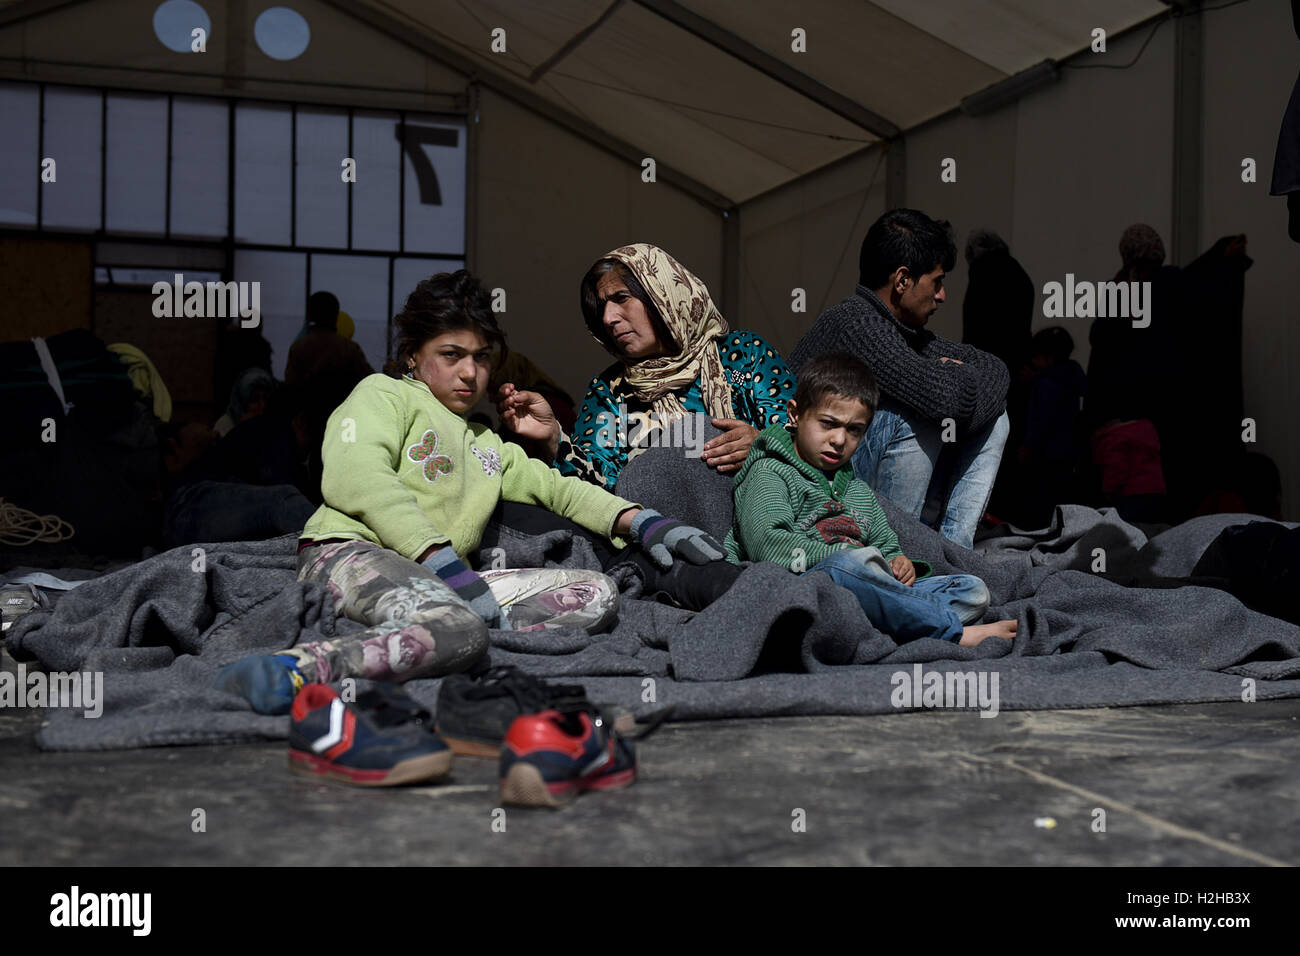 Una donna con i suoi bambini sedersi dentro una tenda, in un campo di rifugiati, a nord del villaggio greco di Idomeni, alla Greca confine macedone. Migliaia di rifugiati e migranti sono rimasti bloccati per mesi al Greco confine macedone, presso il campo di rifugiati nei pressi del villaggio di Idomeni, fino a quando il governo greco ha deciso di evacuare l'area. Foto Stock